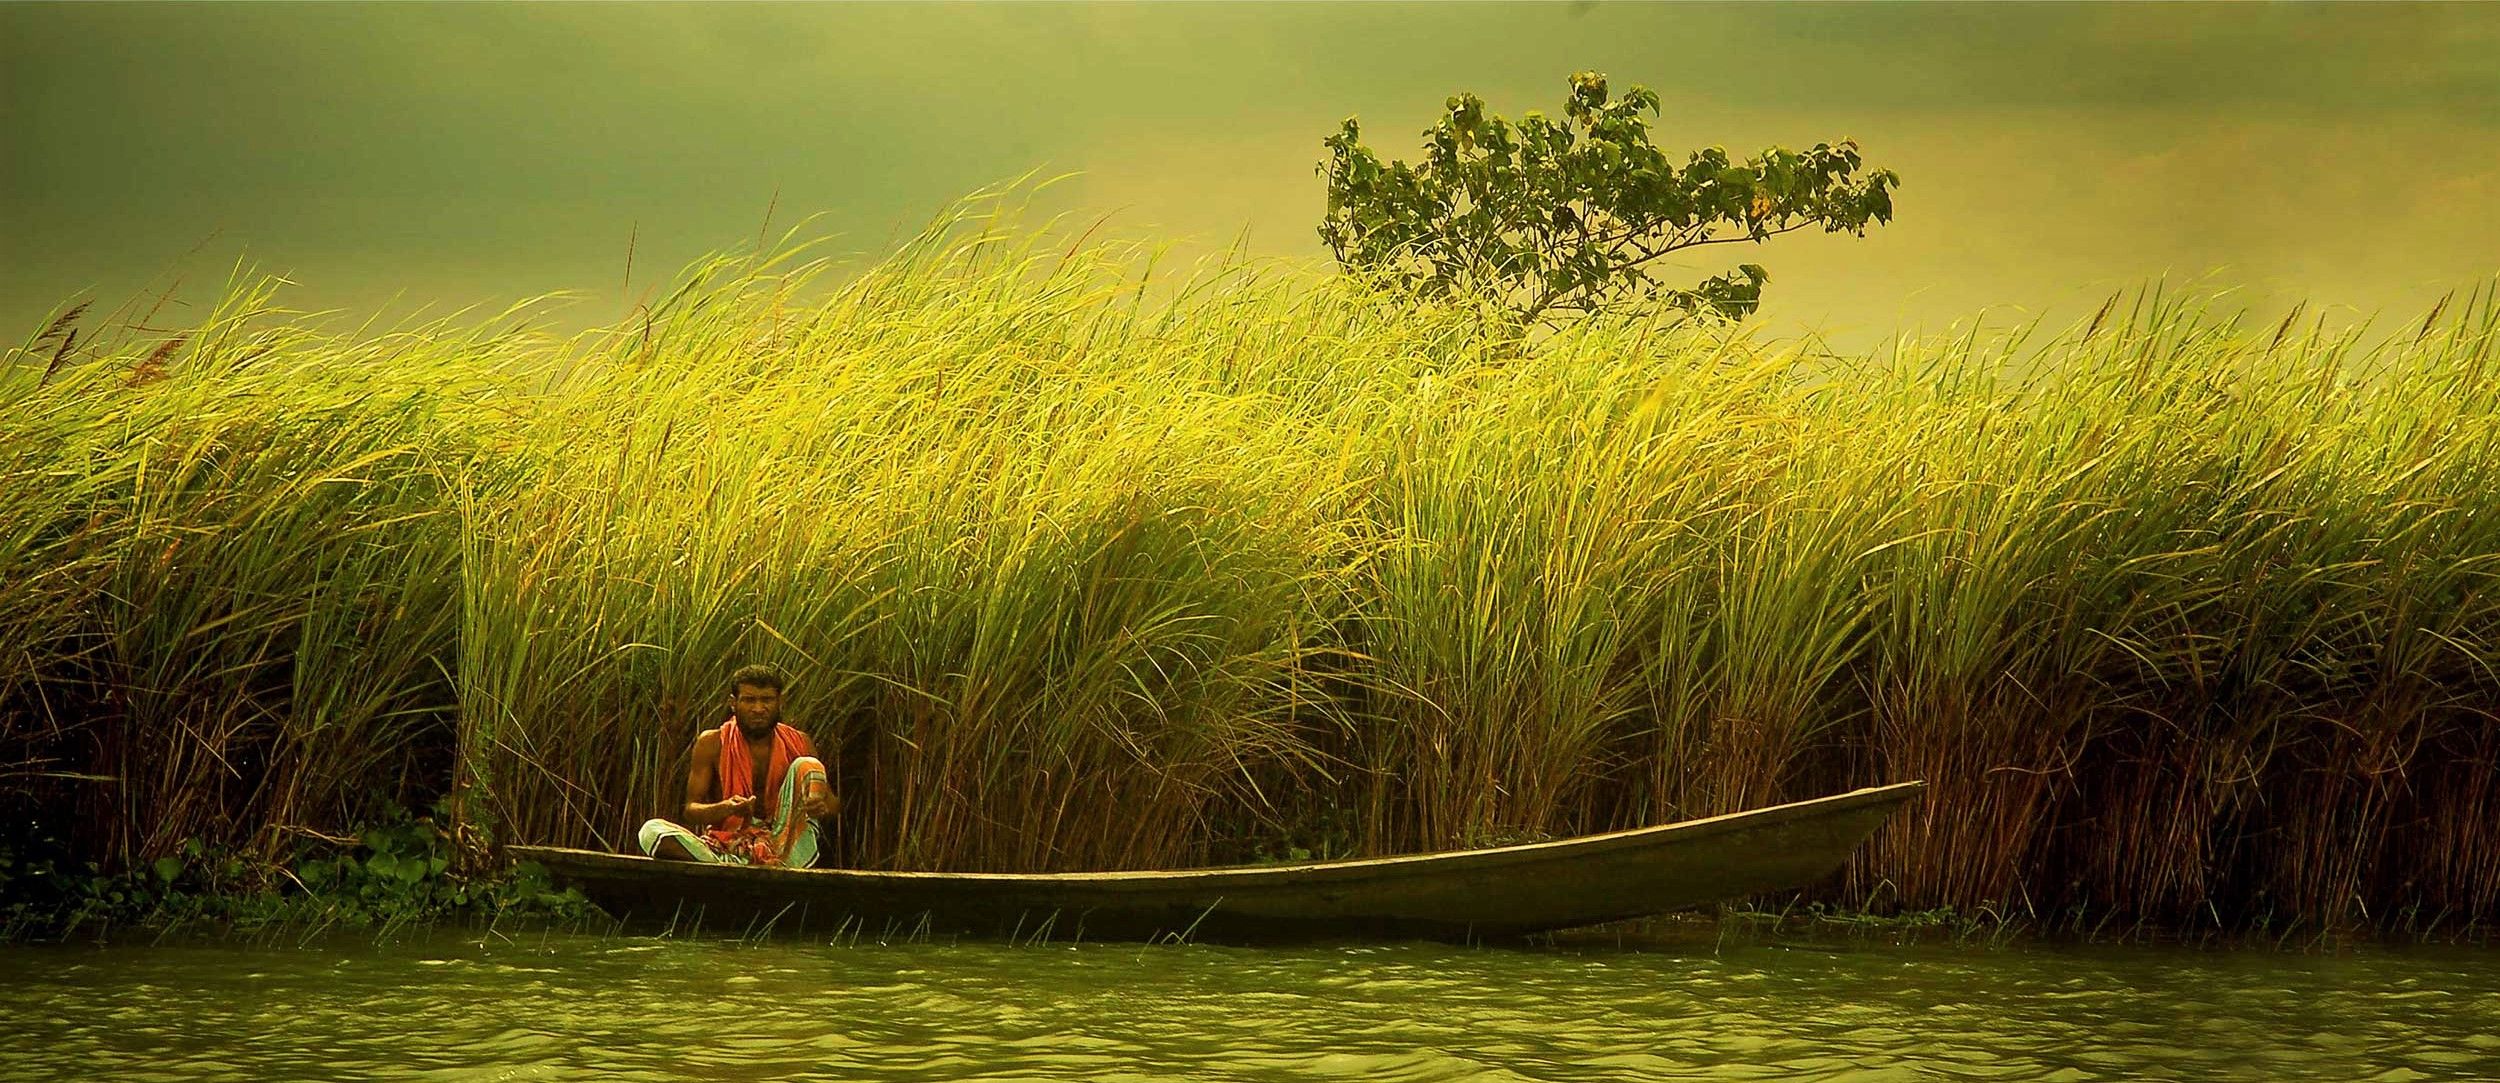 Natural Beauty Of Bangladesh